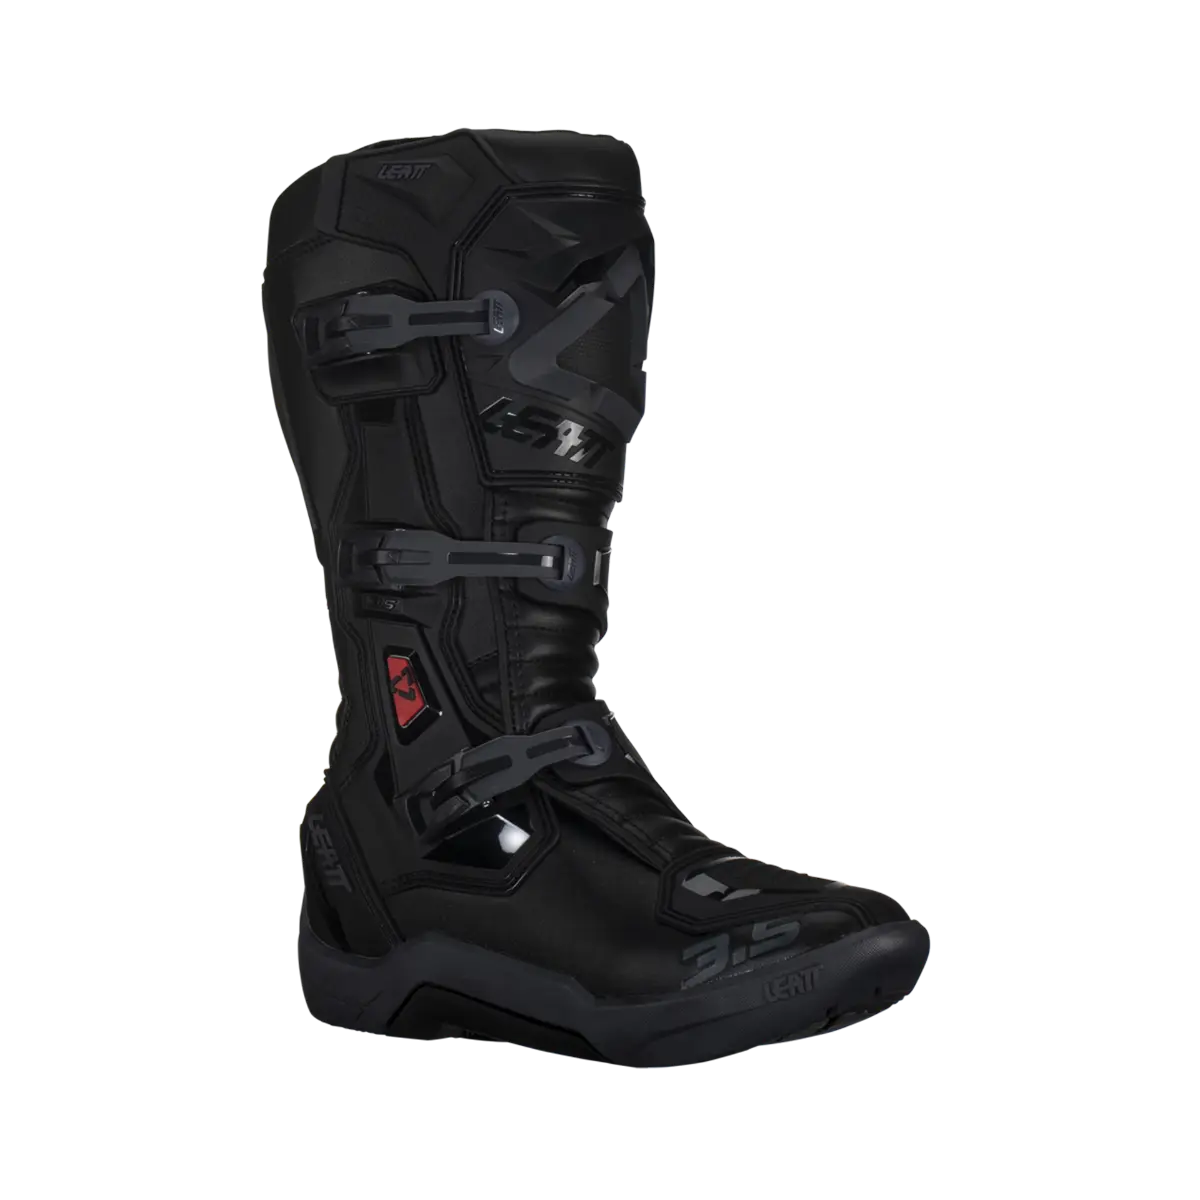 Leatt 3.5 Boots Adult Black / Stealth